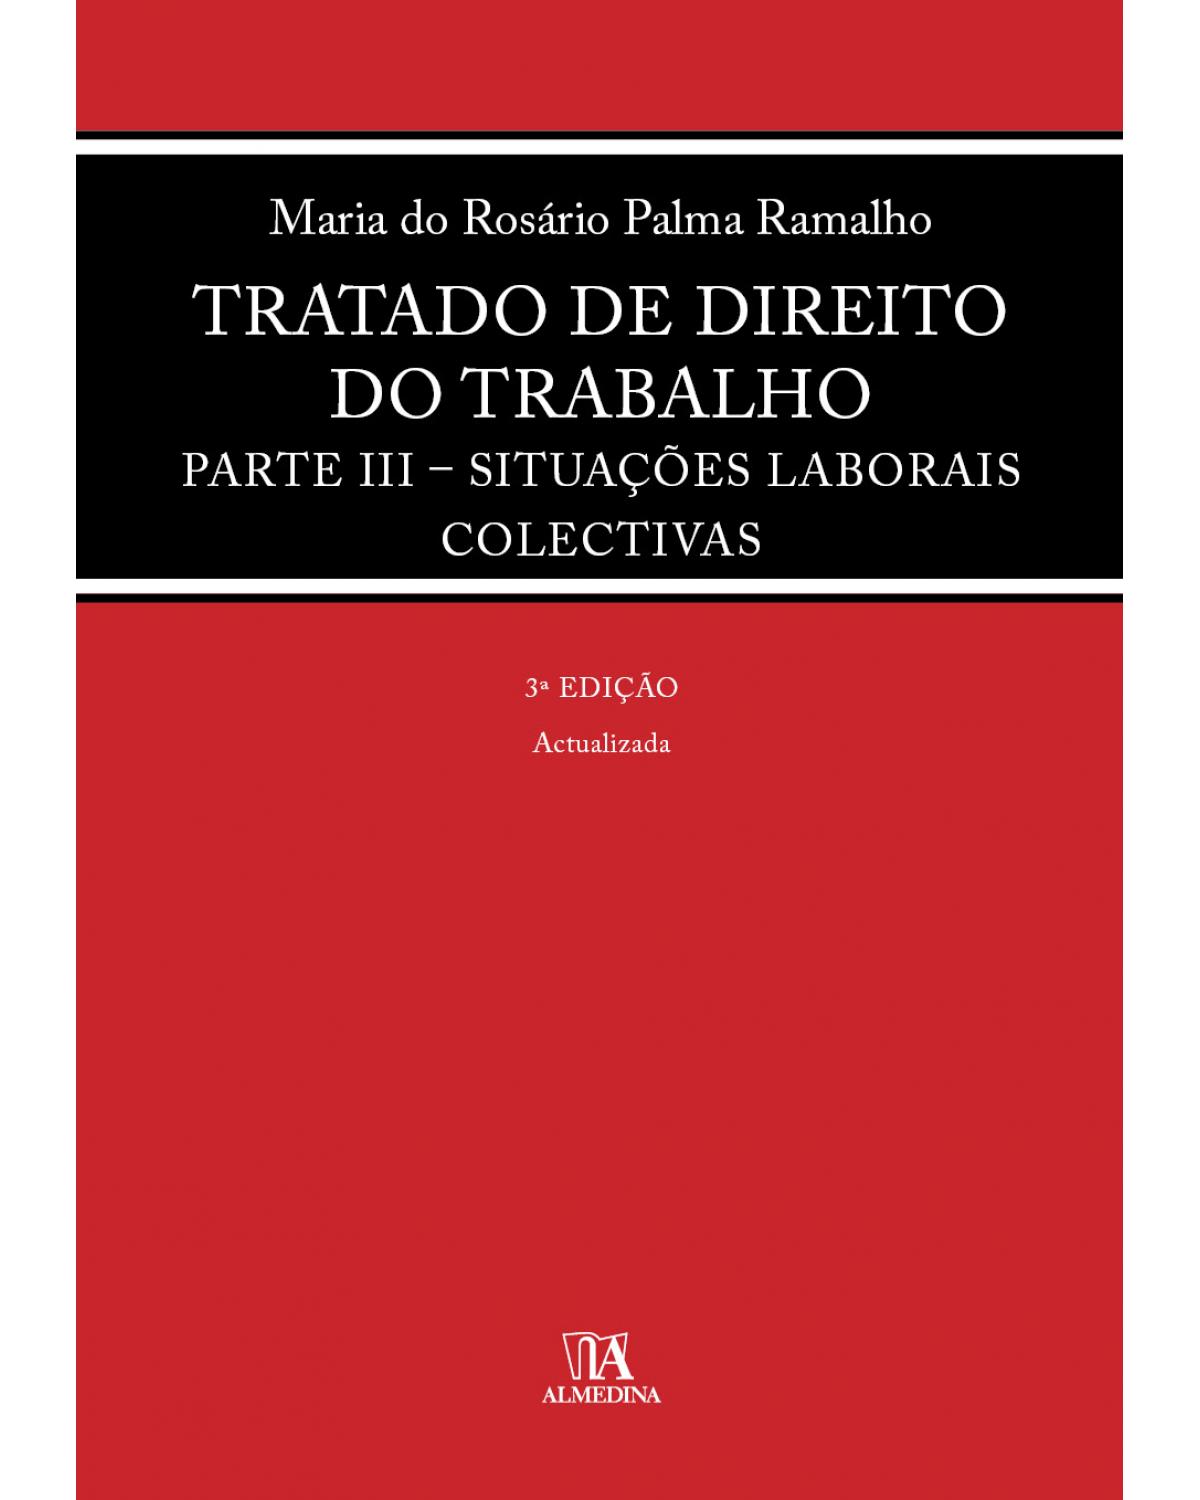 Tratado de direito do trabalho - parte III - Situações laborais colectivas - 3ª Edição | 2020